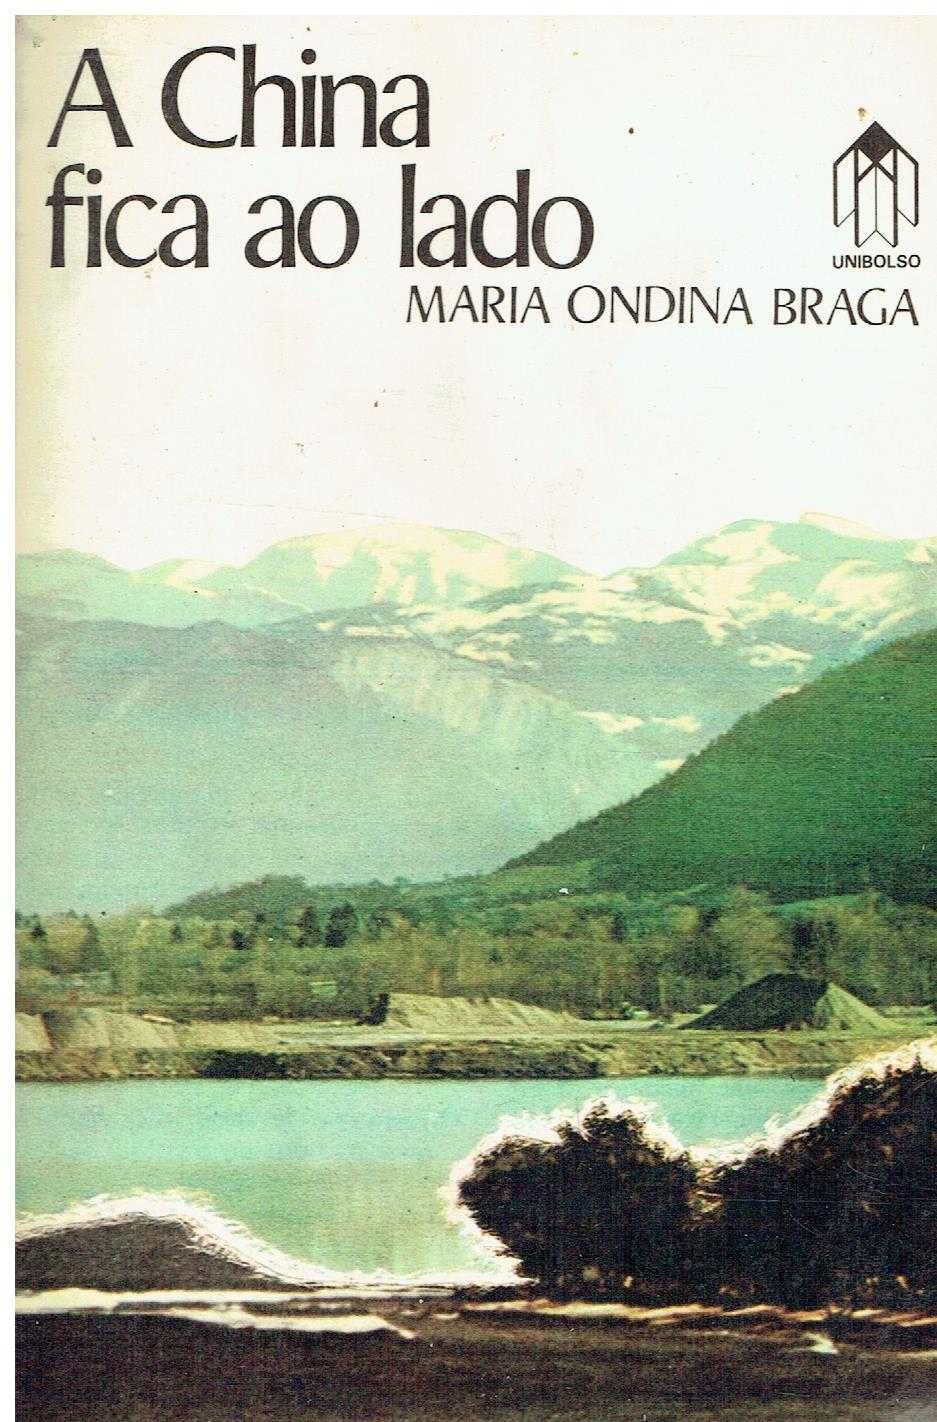 12136

Livros de Maria Ondina Braga